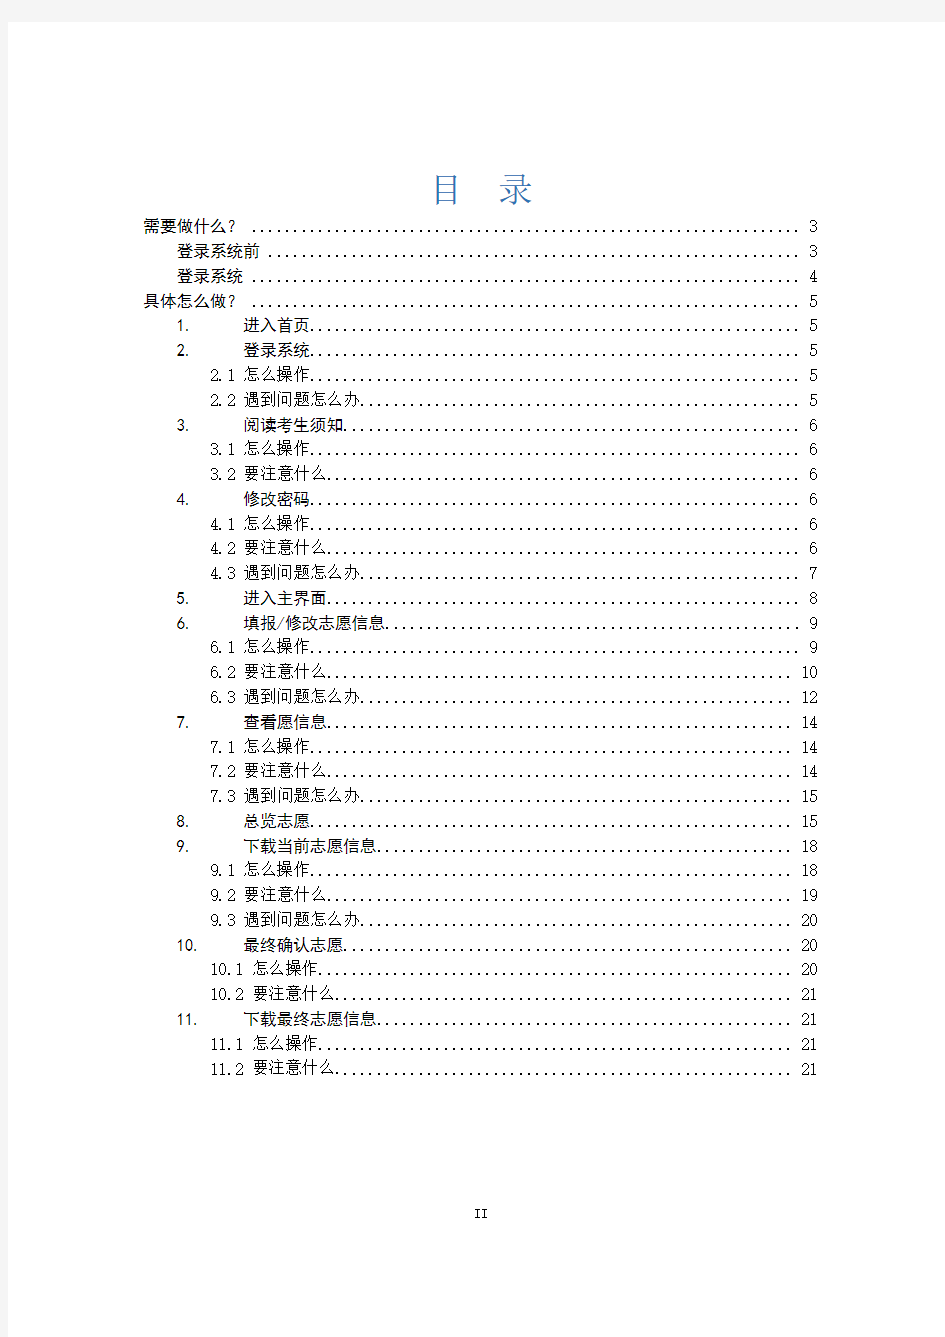 2018年辽宁高考志愿填报系统操作手册(考生版)